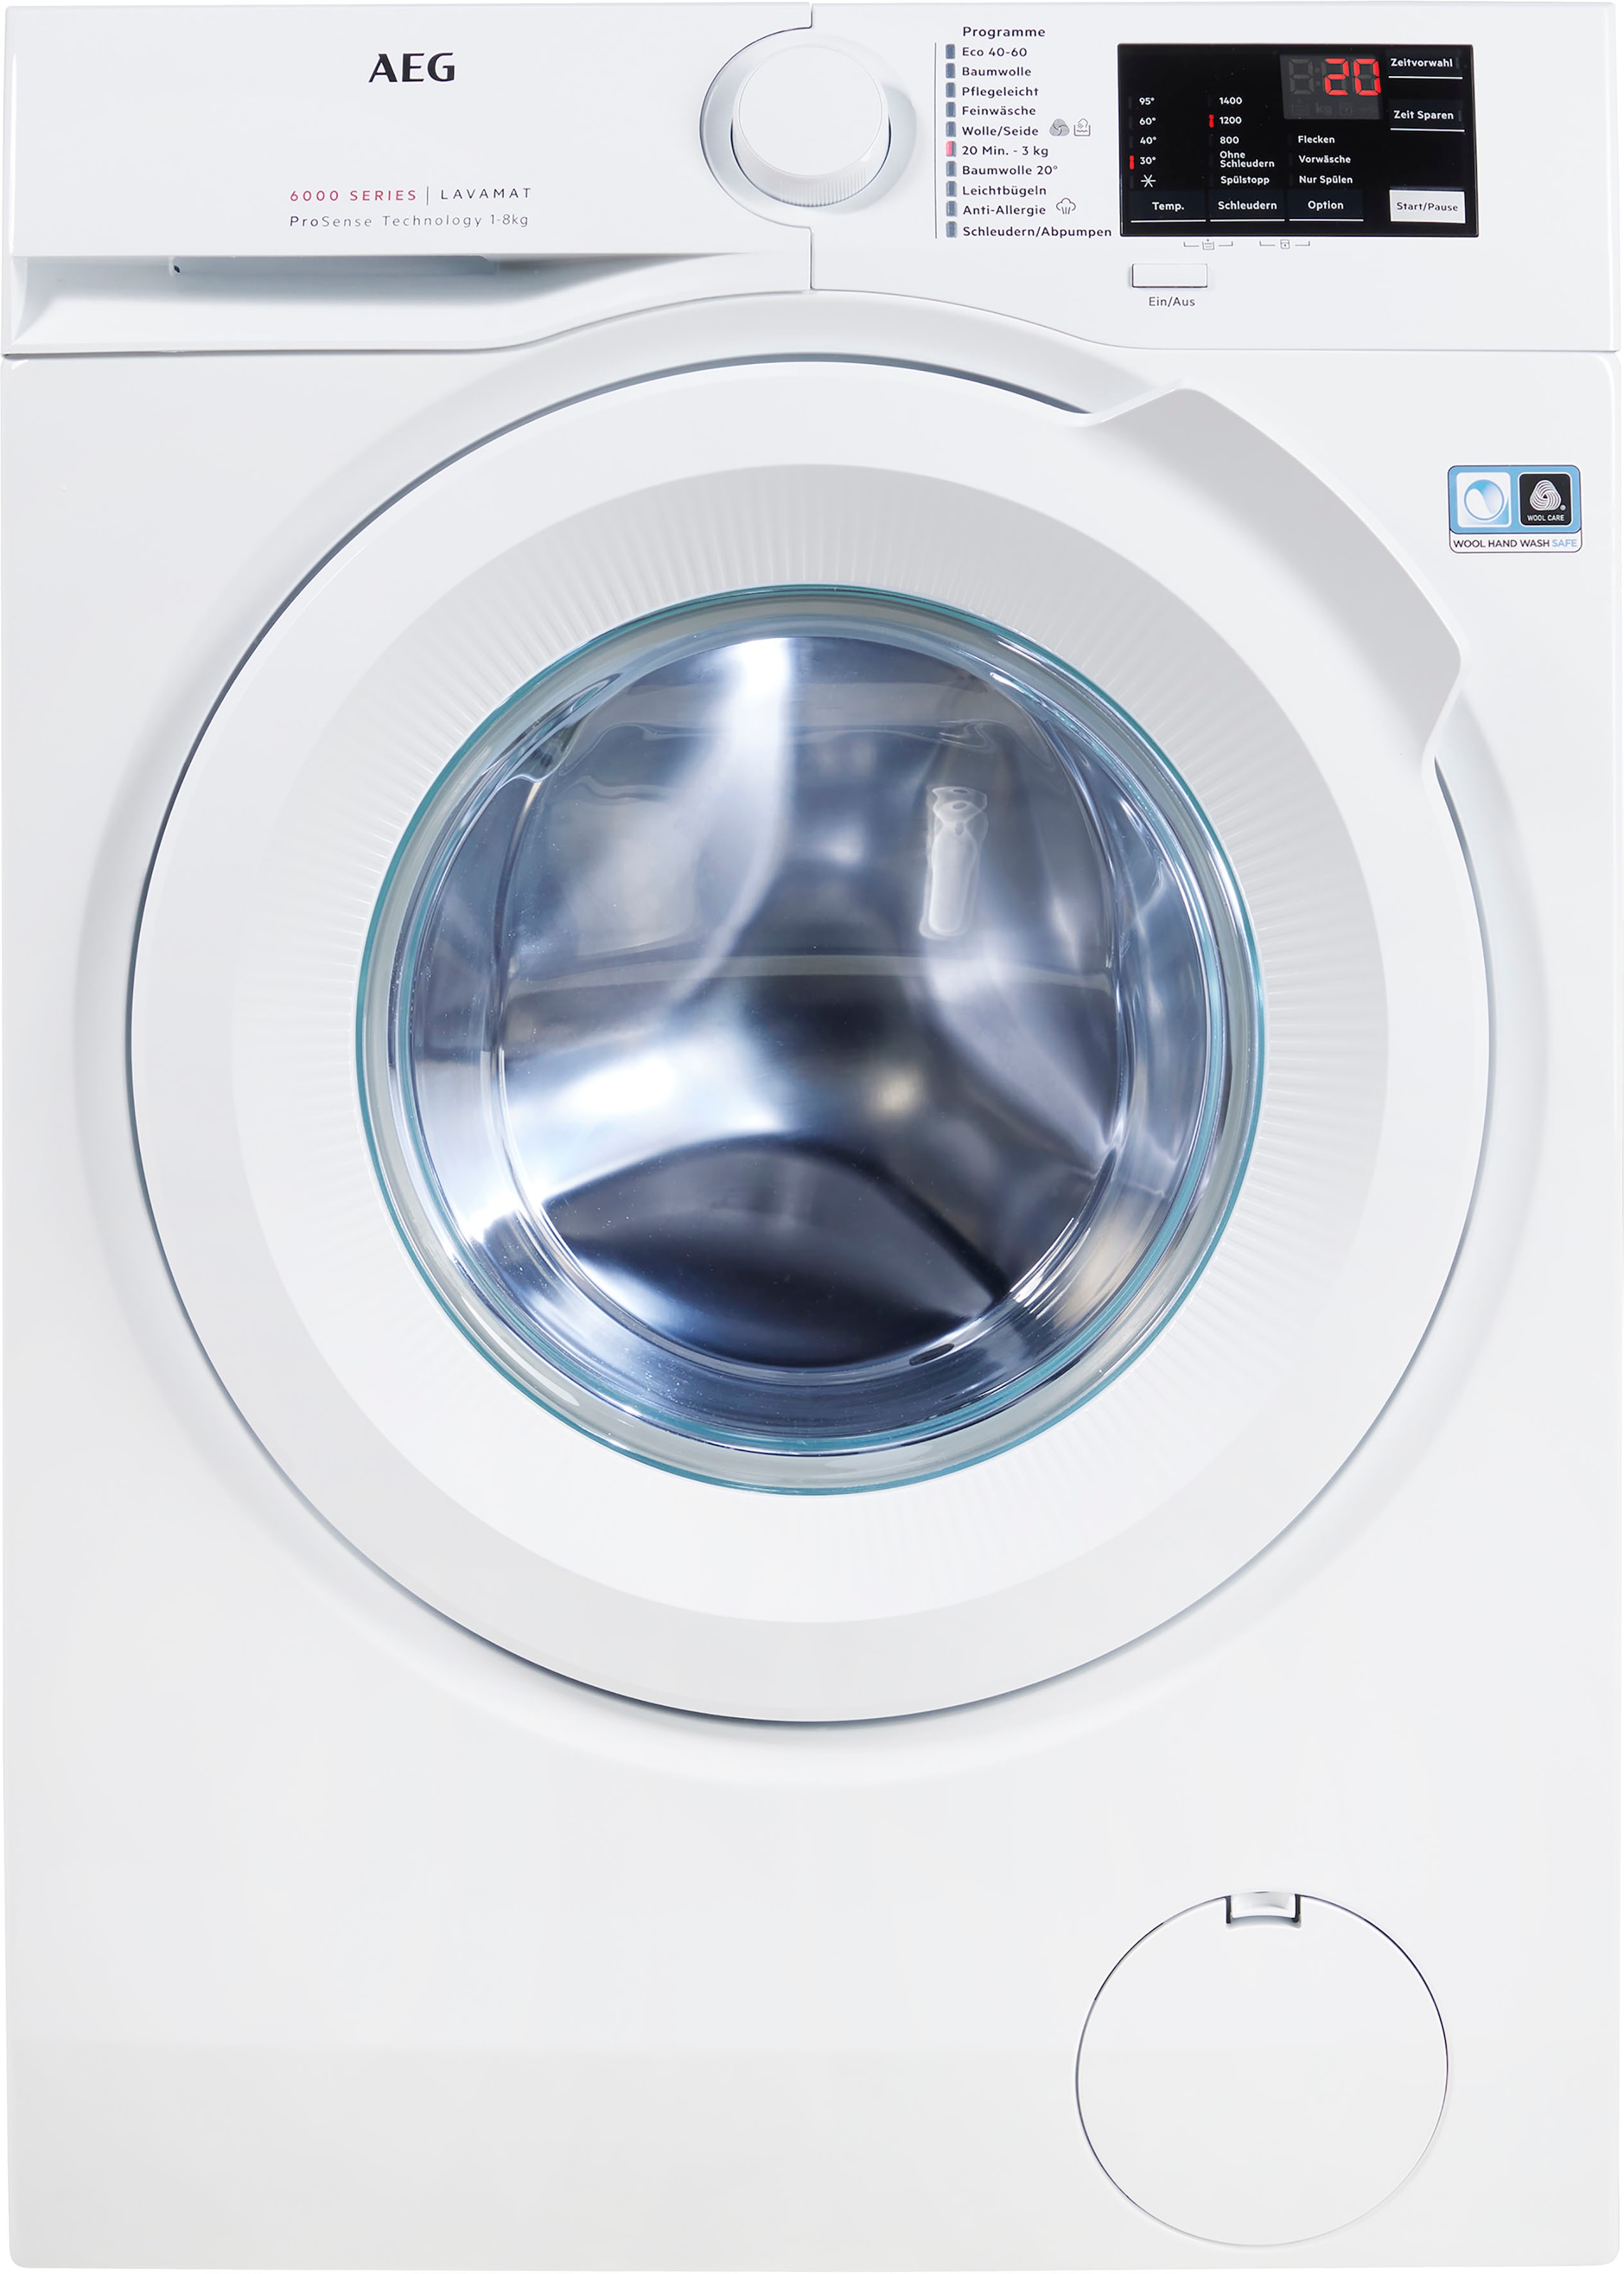 AEG Waschmaschine, 8 1400 mit Programm 6000, Serie Hygiene-/ 3 XXL U/min, kg, L6FB480FL, Garantie Jahren Dampf mit Anti-Allergie